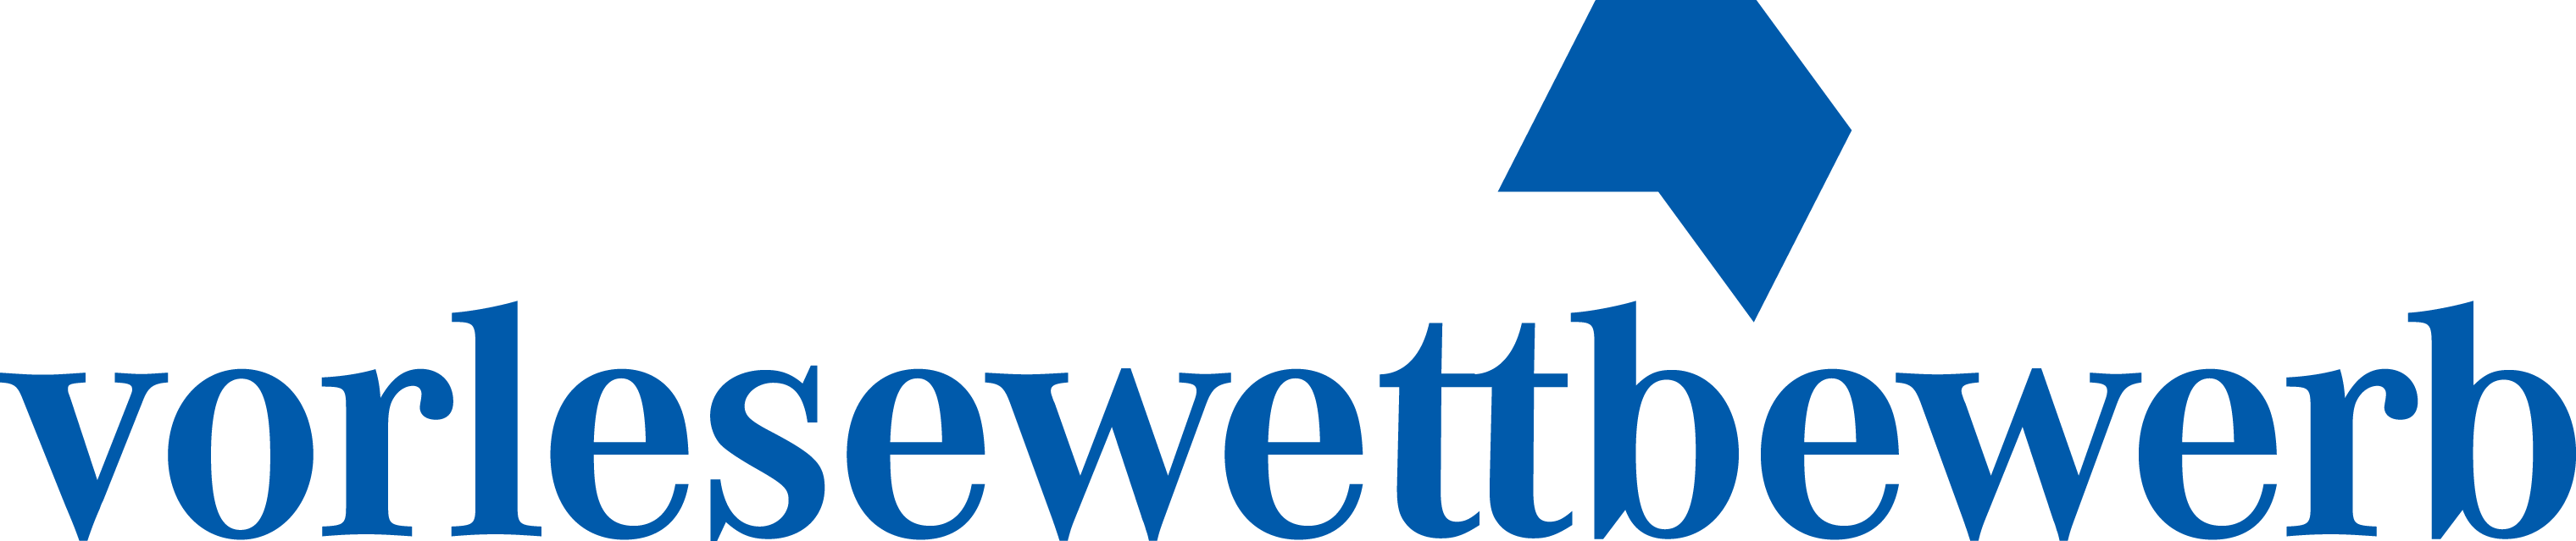 vorlesewettbewerb logo